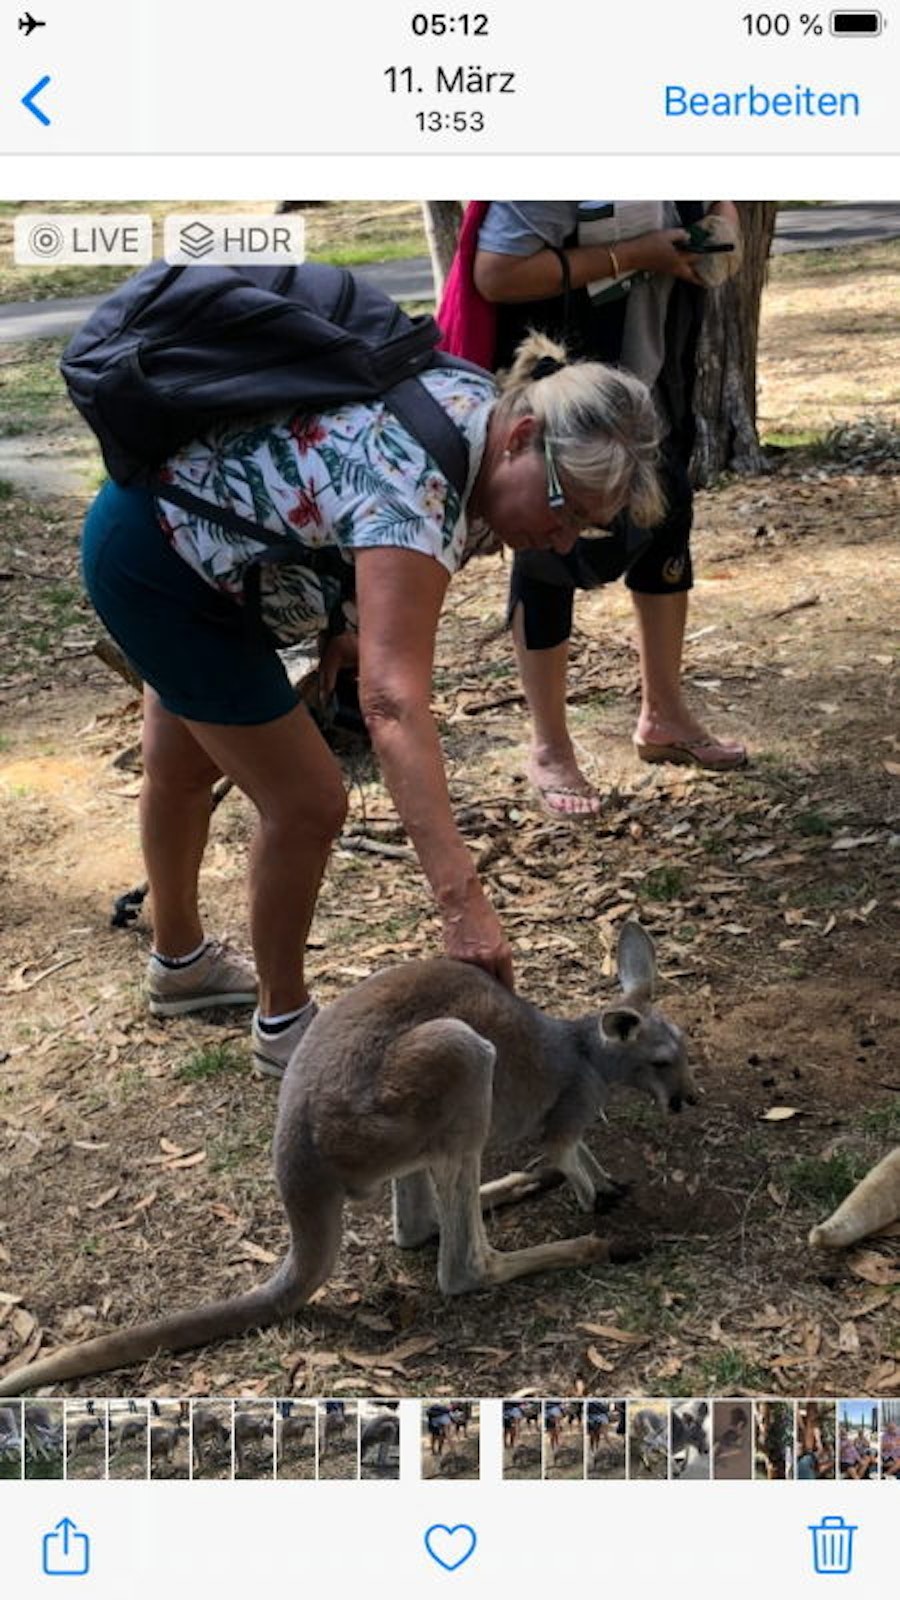 In Adelaide, vor der großen Irrfahrt, begegneten sie Kängurus.